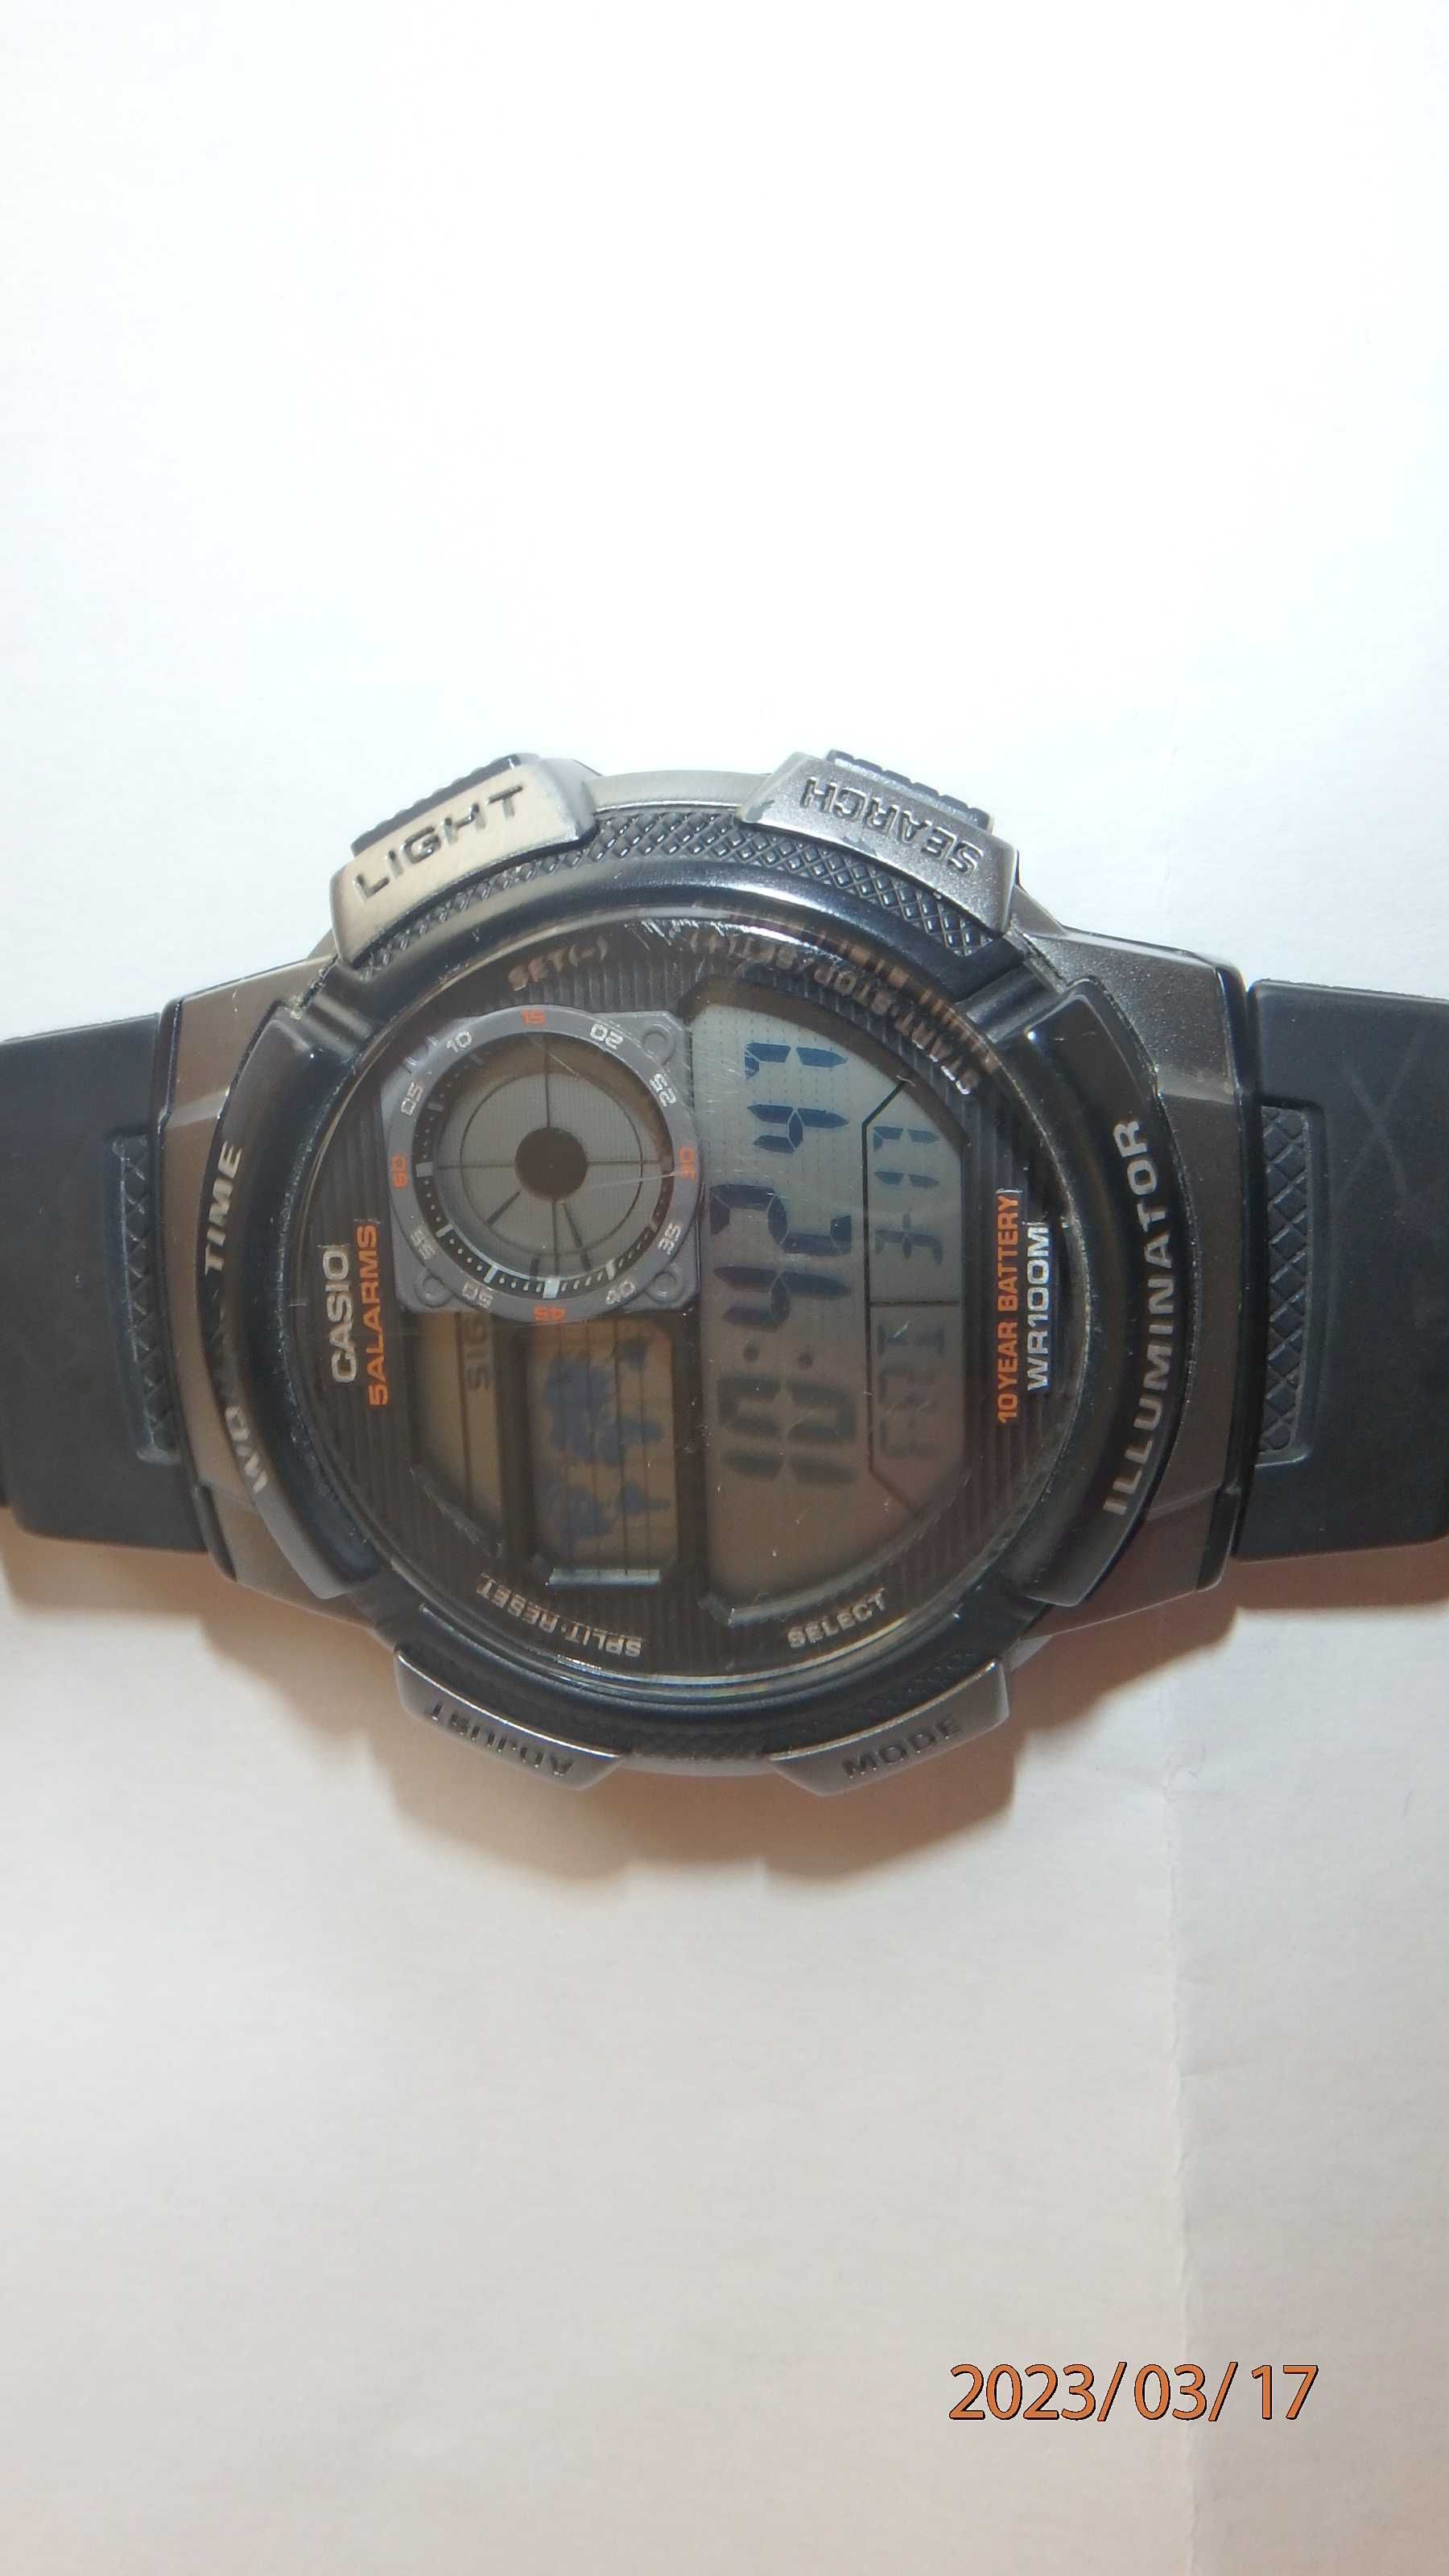 Zegarek męski, młodzieżowy CASIO AE-1000W 1BVDF World Time + puszka.